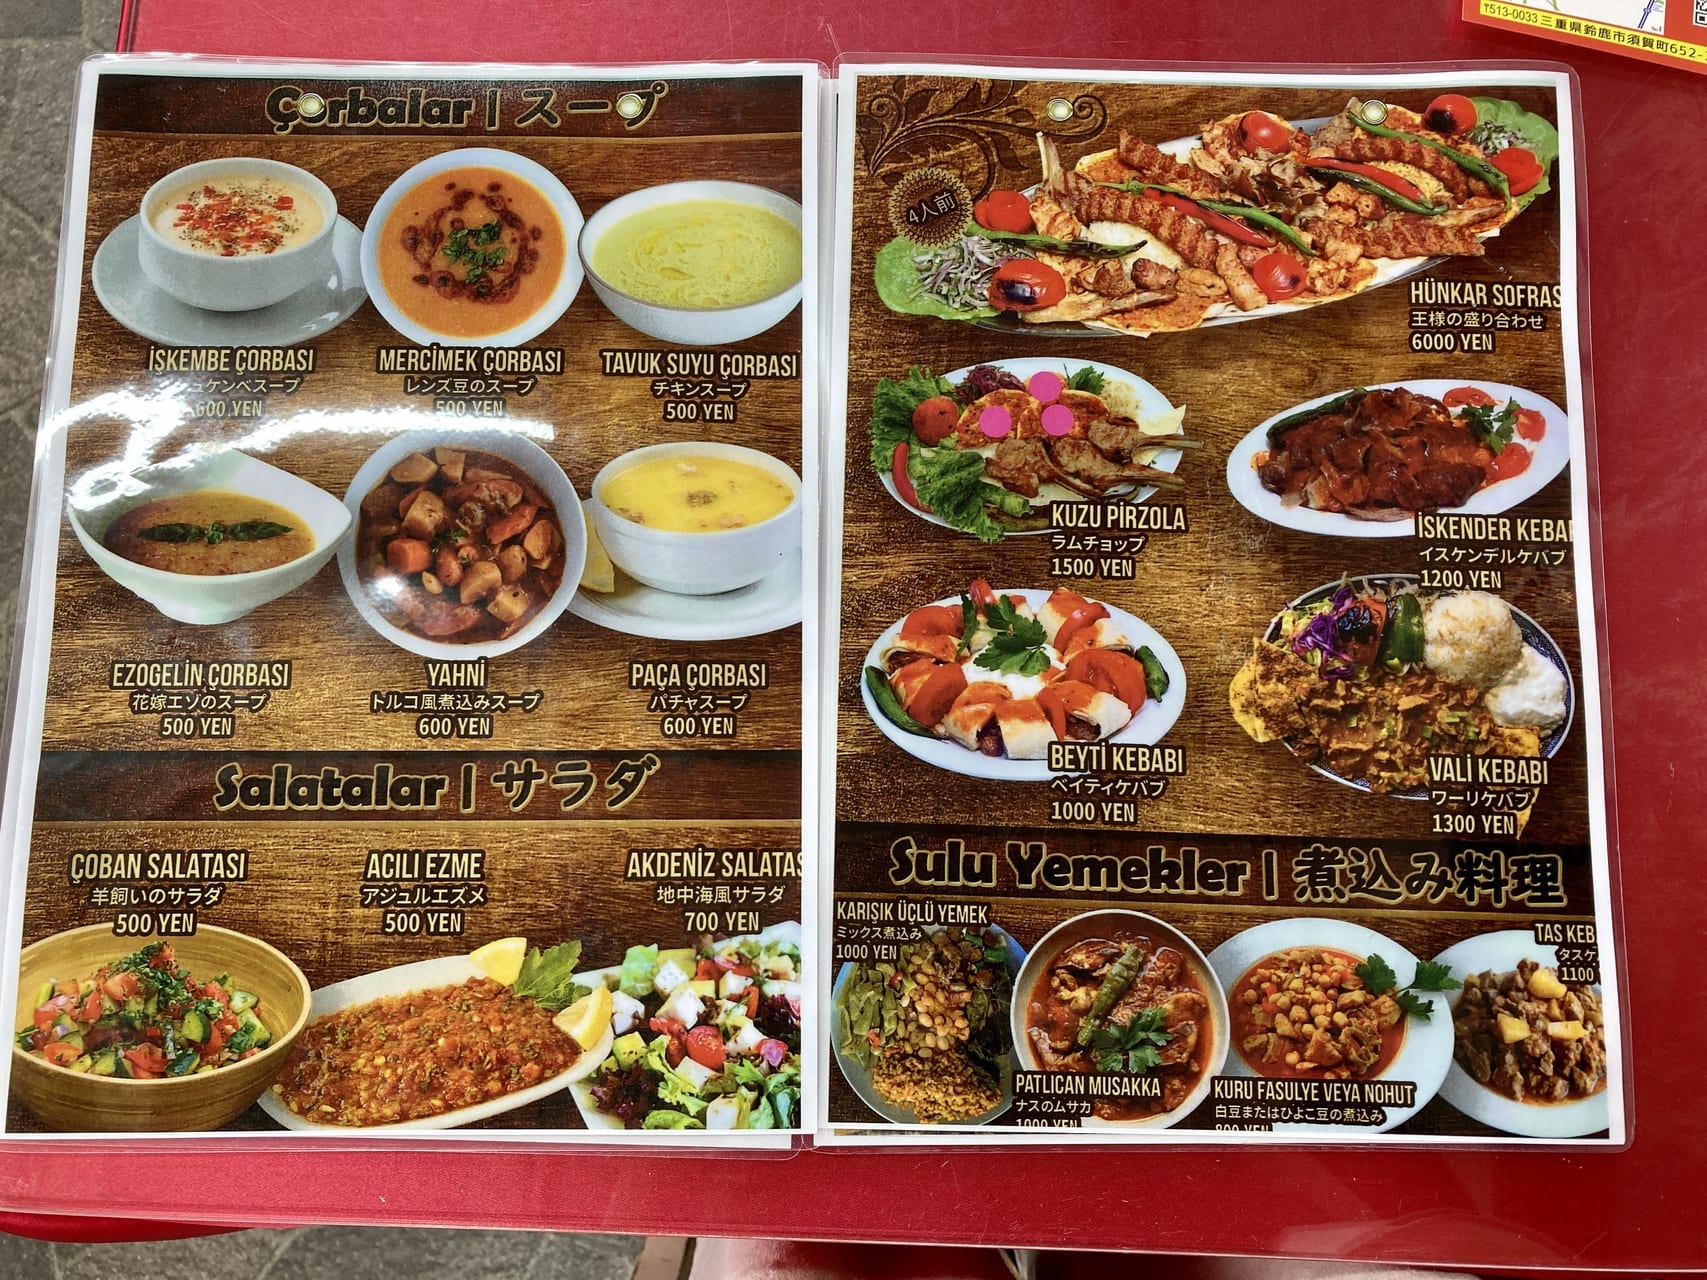 鈴鹿市 9月5日 Istanbul Restaurant イスタンブールレストラン がオープンしました 号外net 鈴鹿市 亀山市